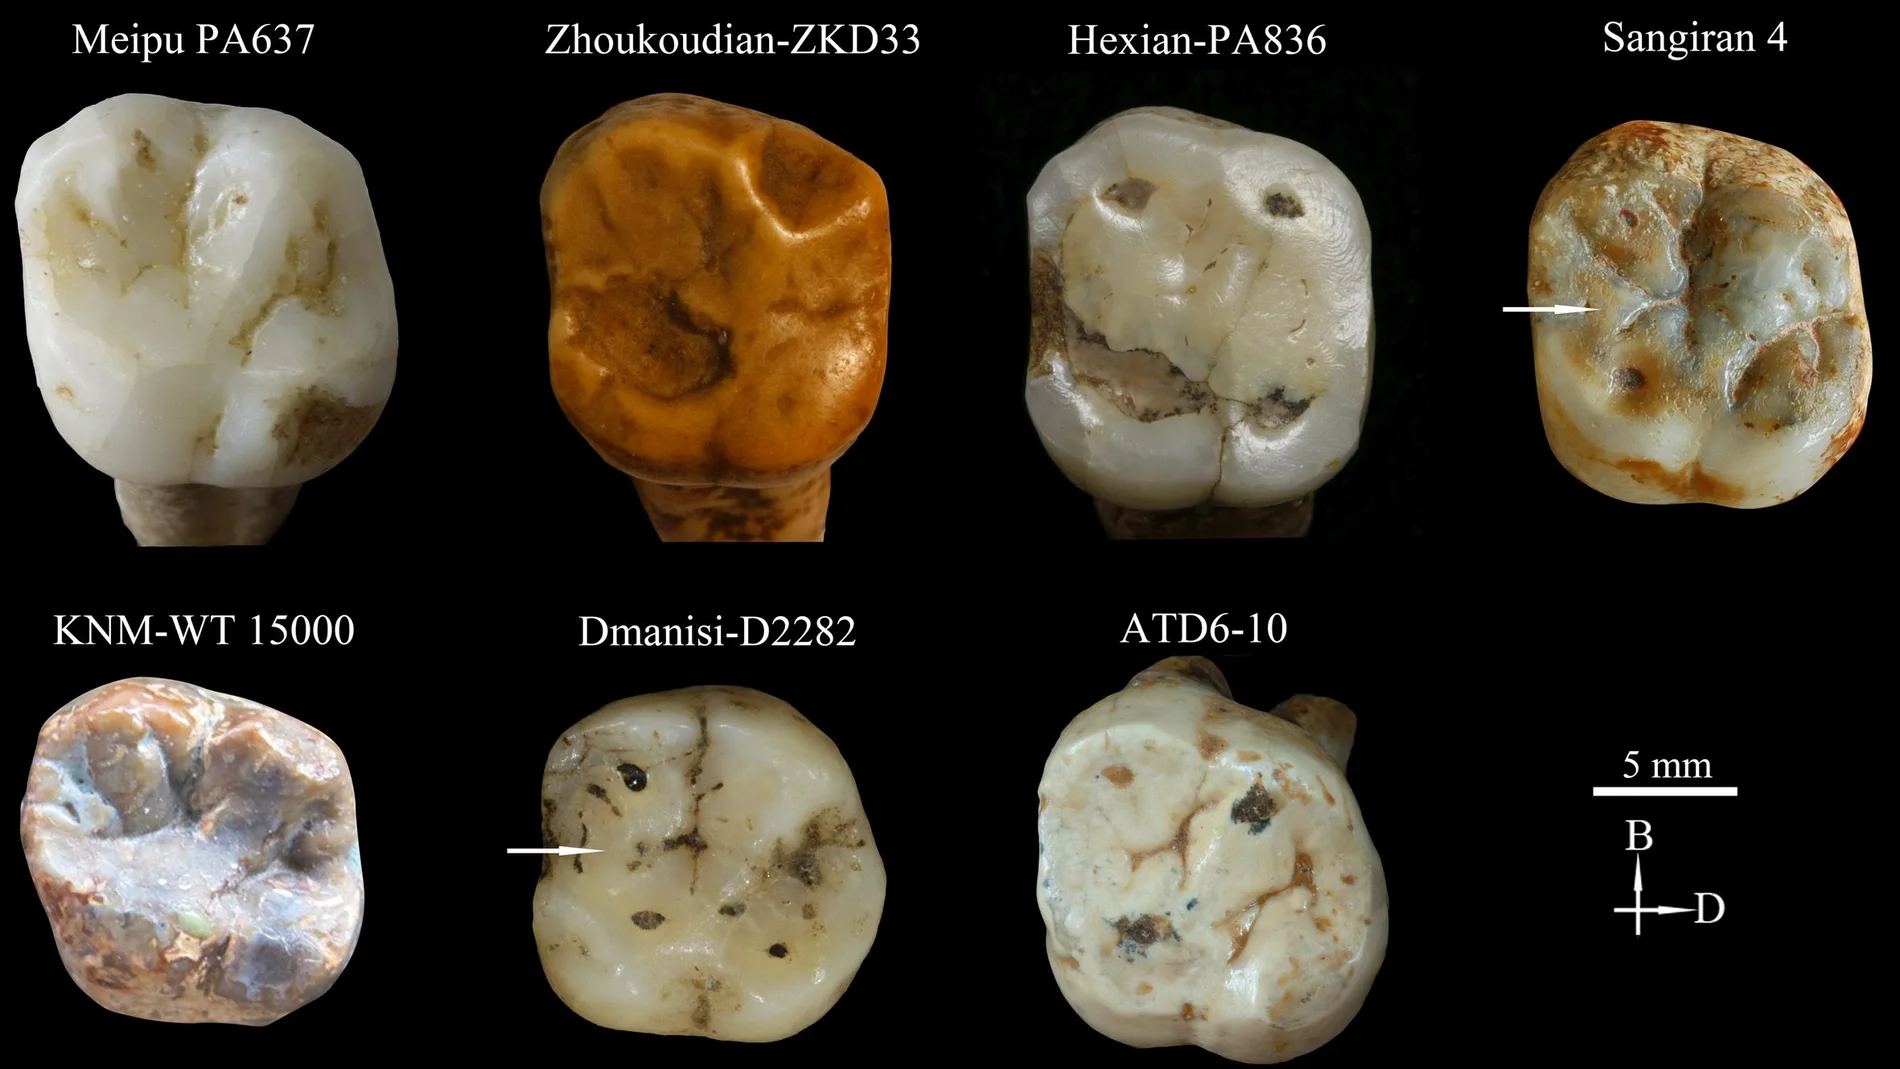 Dientes de Meipu, unos de los pocos fósiles humanos que se conocen en China del Pleistoceno inferior tardío, aportan información sobre el poblamiento temprano de Asia continental